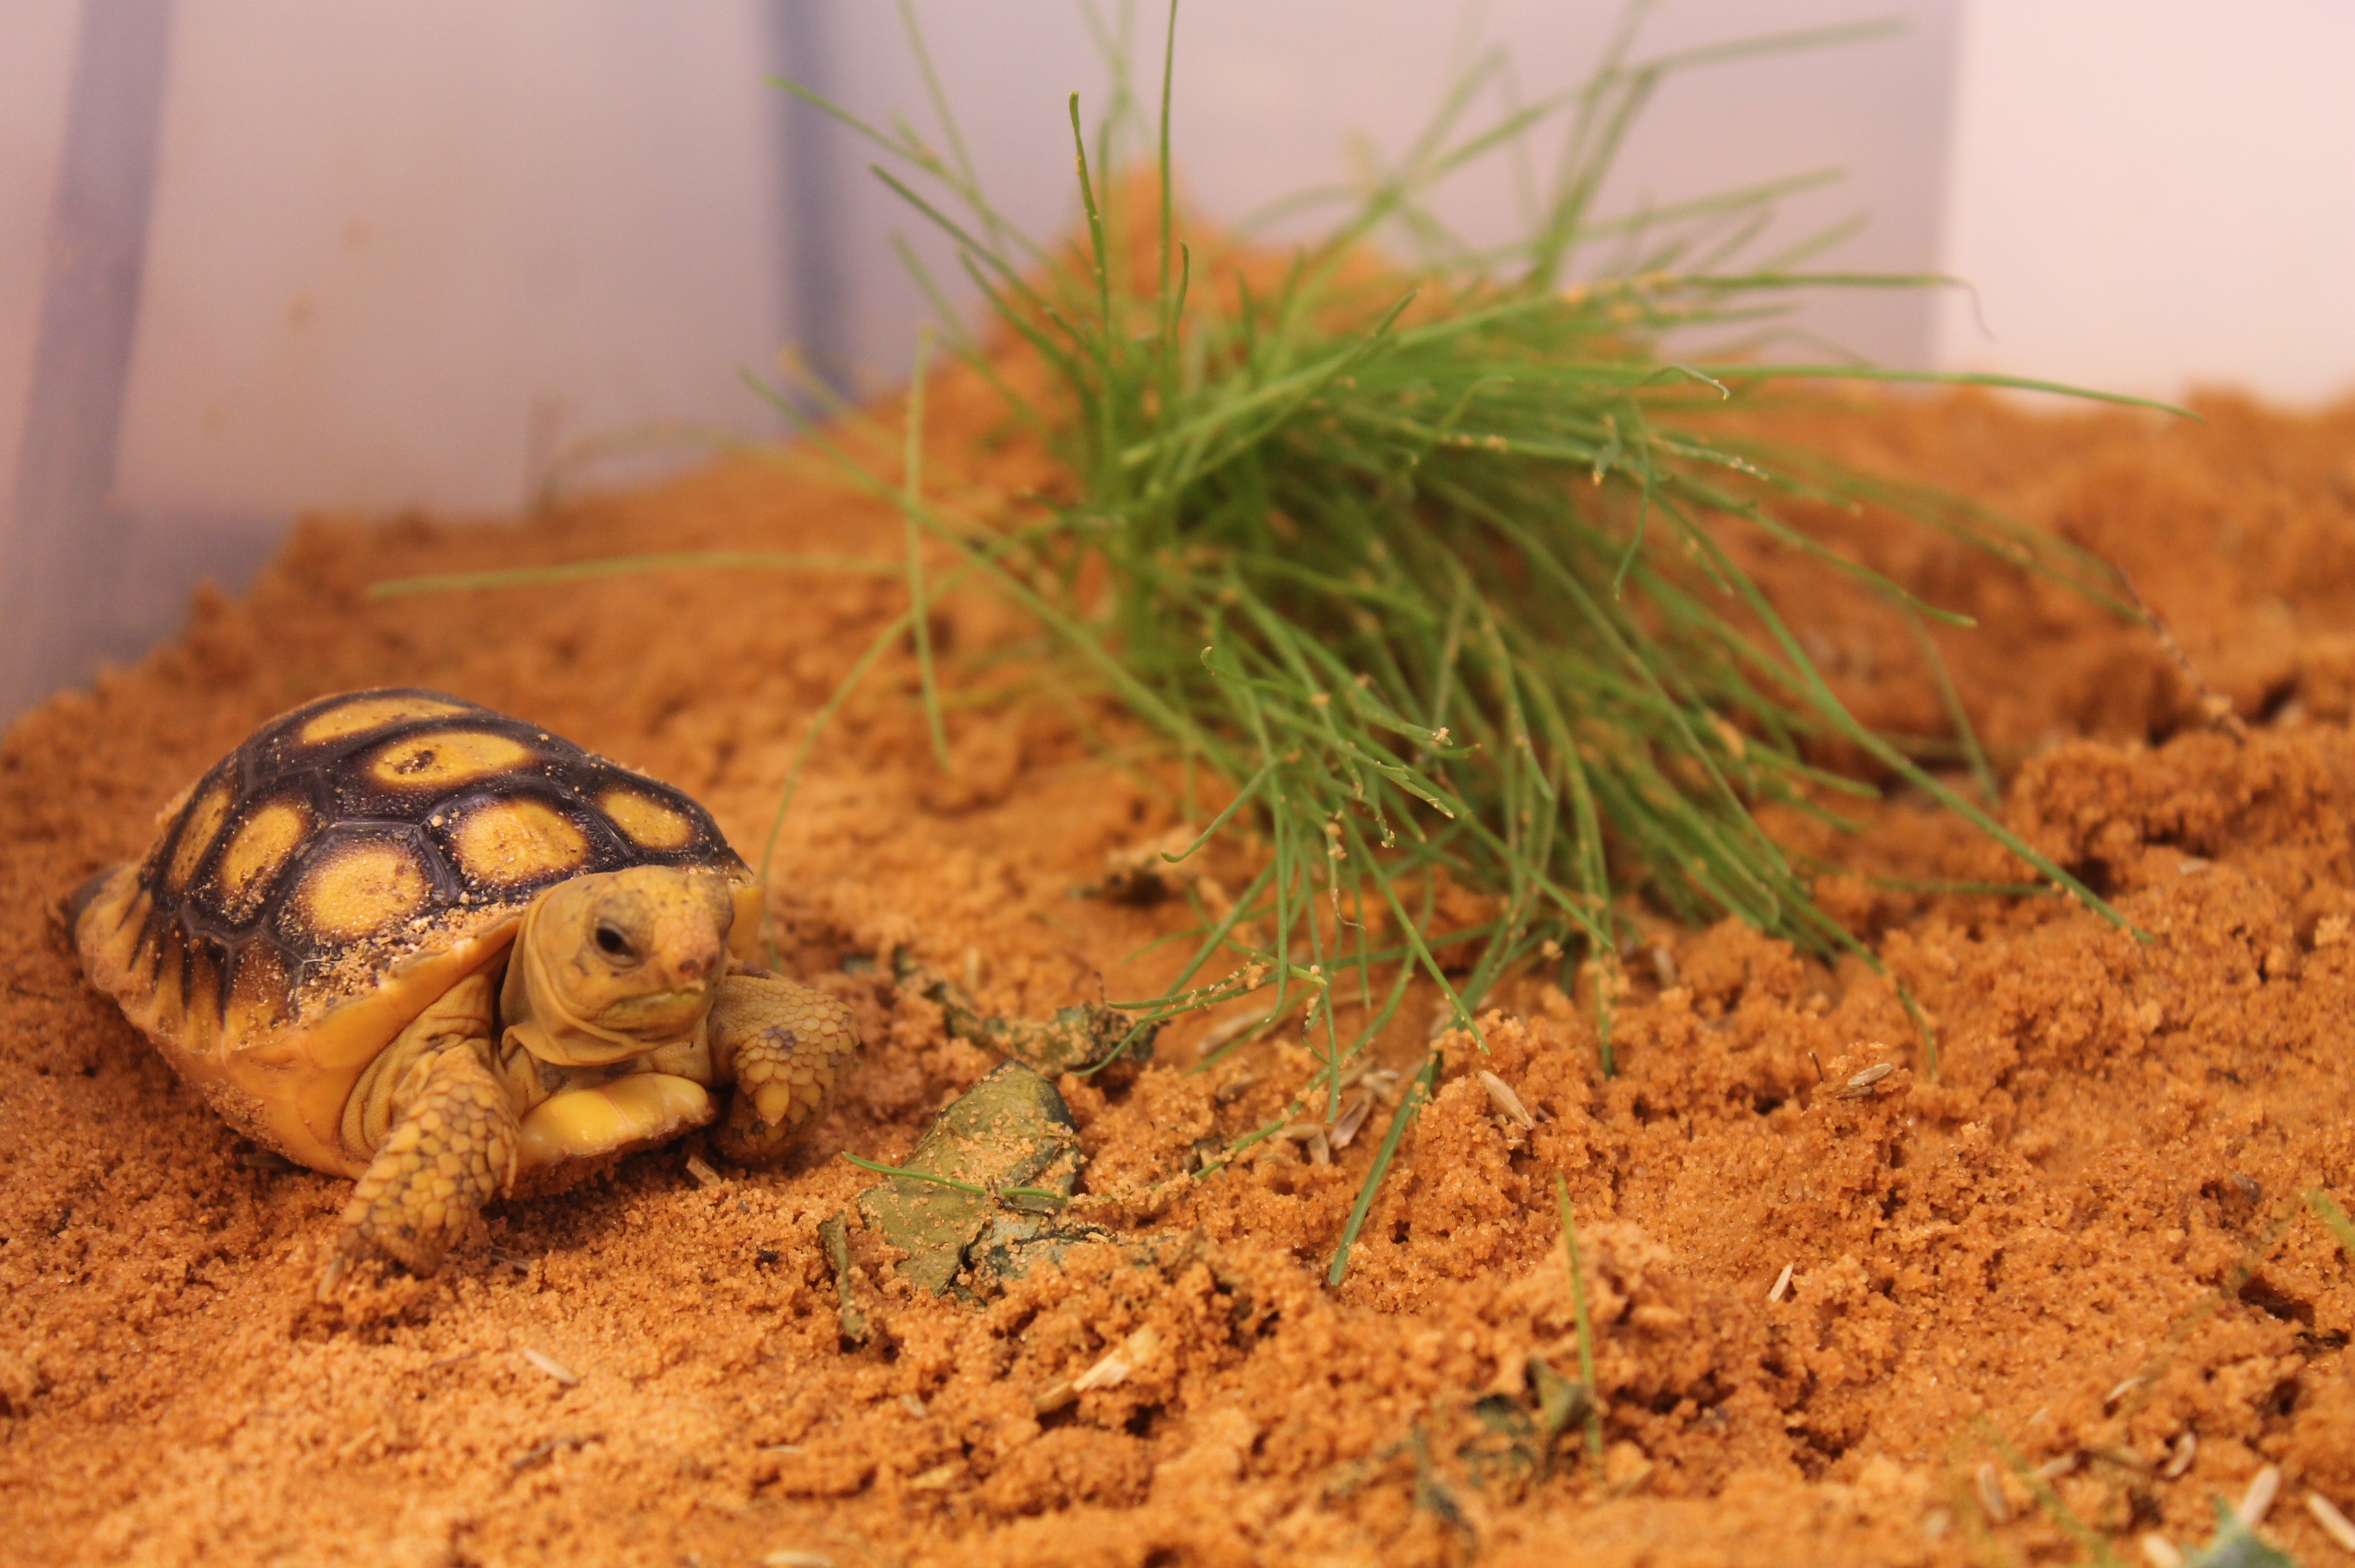 A gopher tortoise hatchling